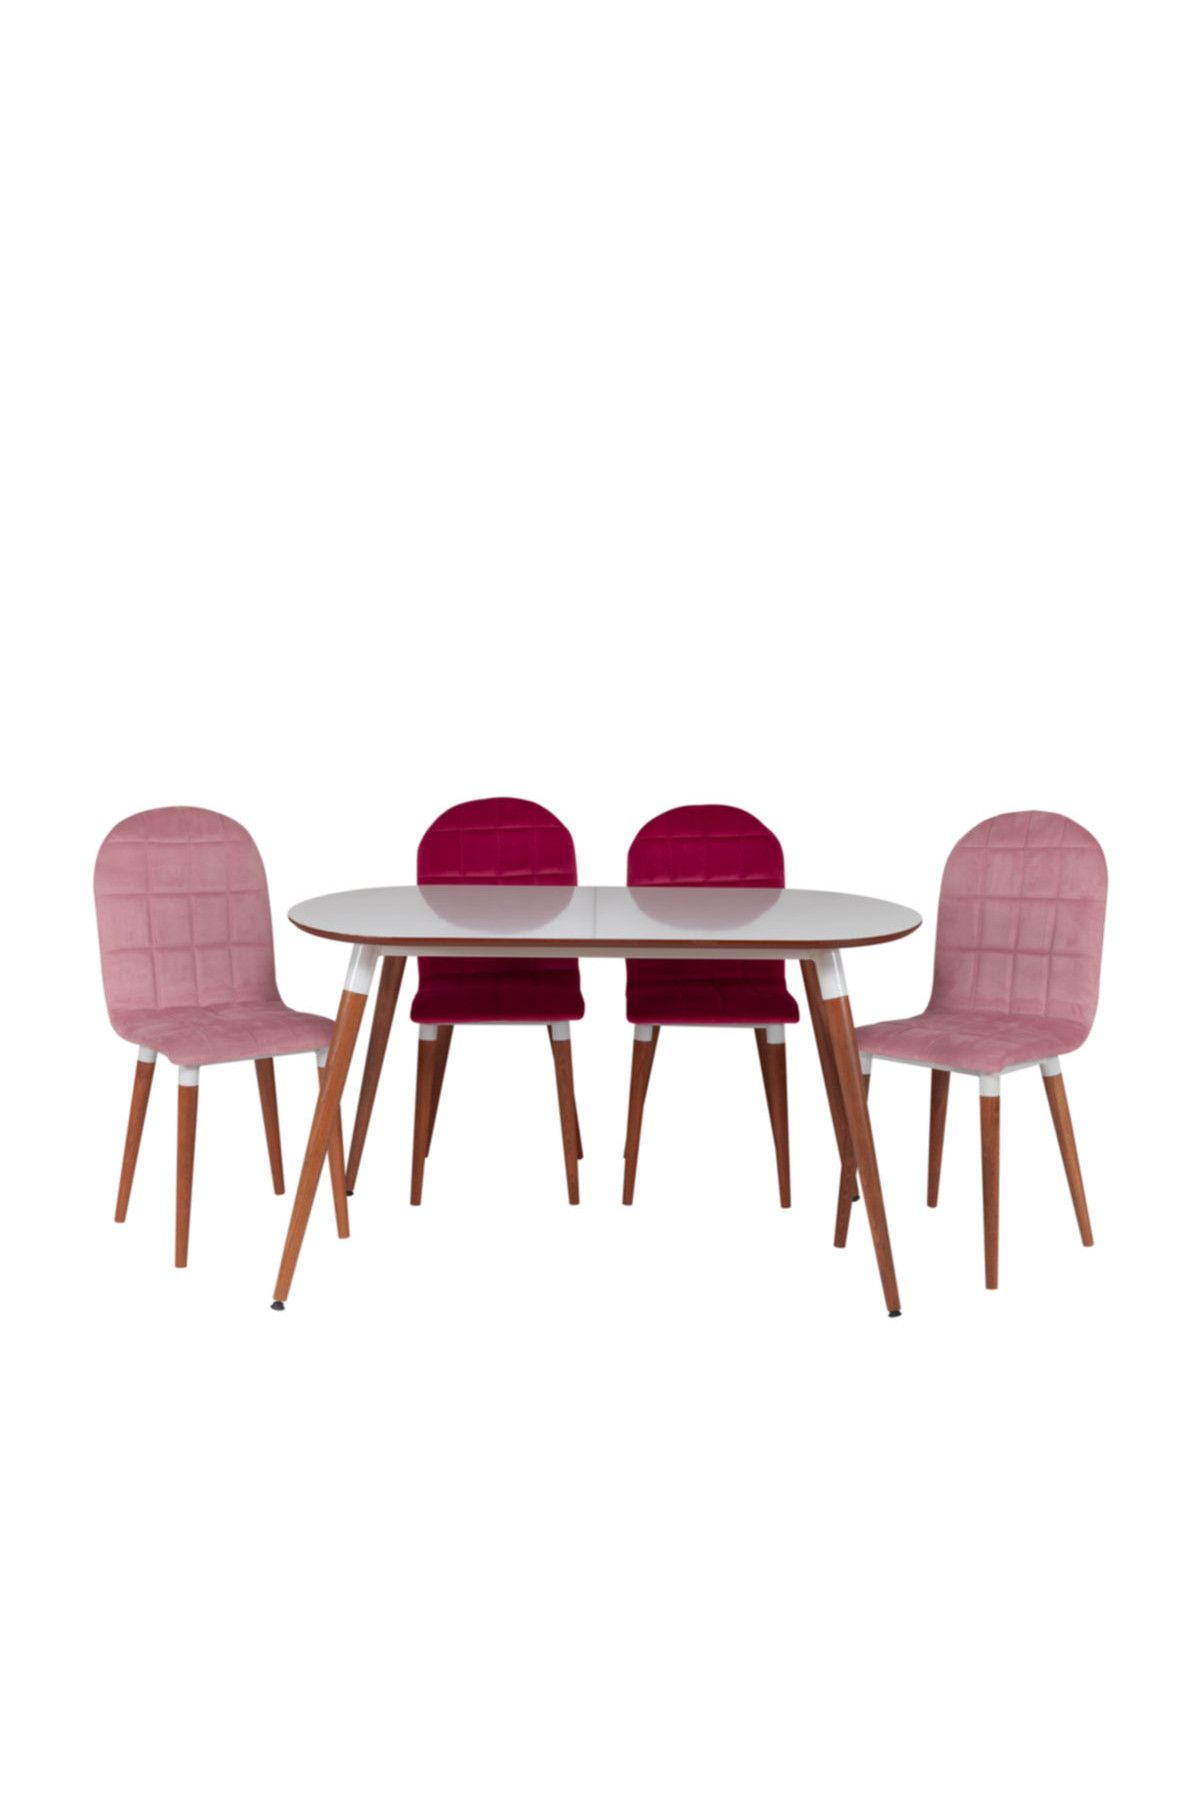 Riş Mobilya Oval Masa Sandalye Takımı , Mutfak Masası